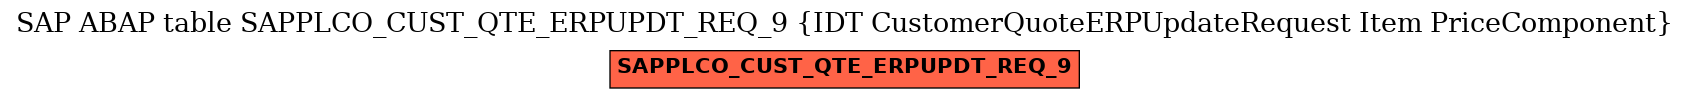 E-R Diagram for table SAPPLCO_CUST_QTE_ERPUPDT_REQ_9 (IDT CustomerQuoteERPUpdateRequest Item PriceComponent)